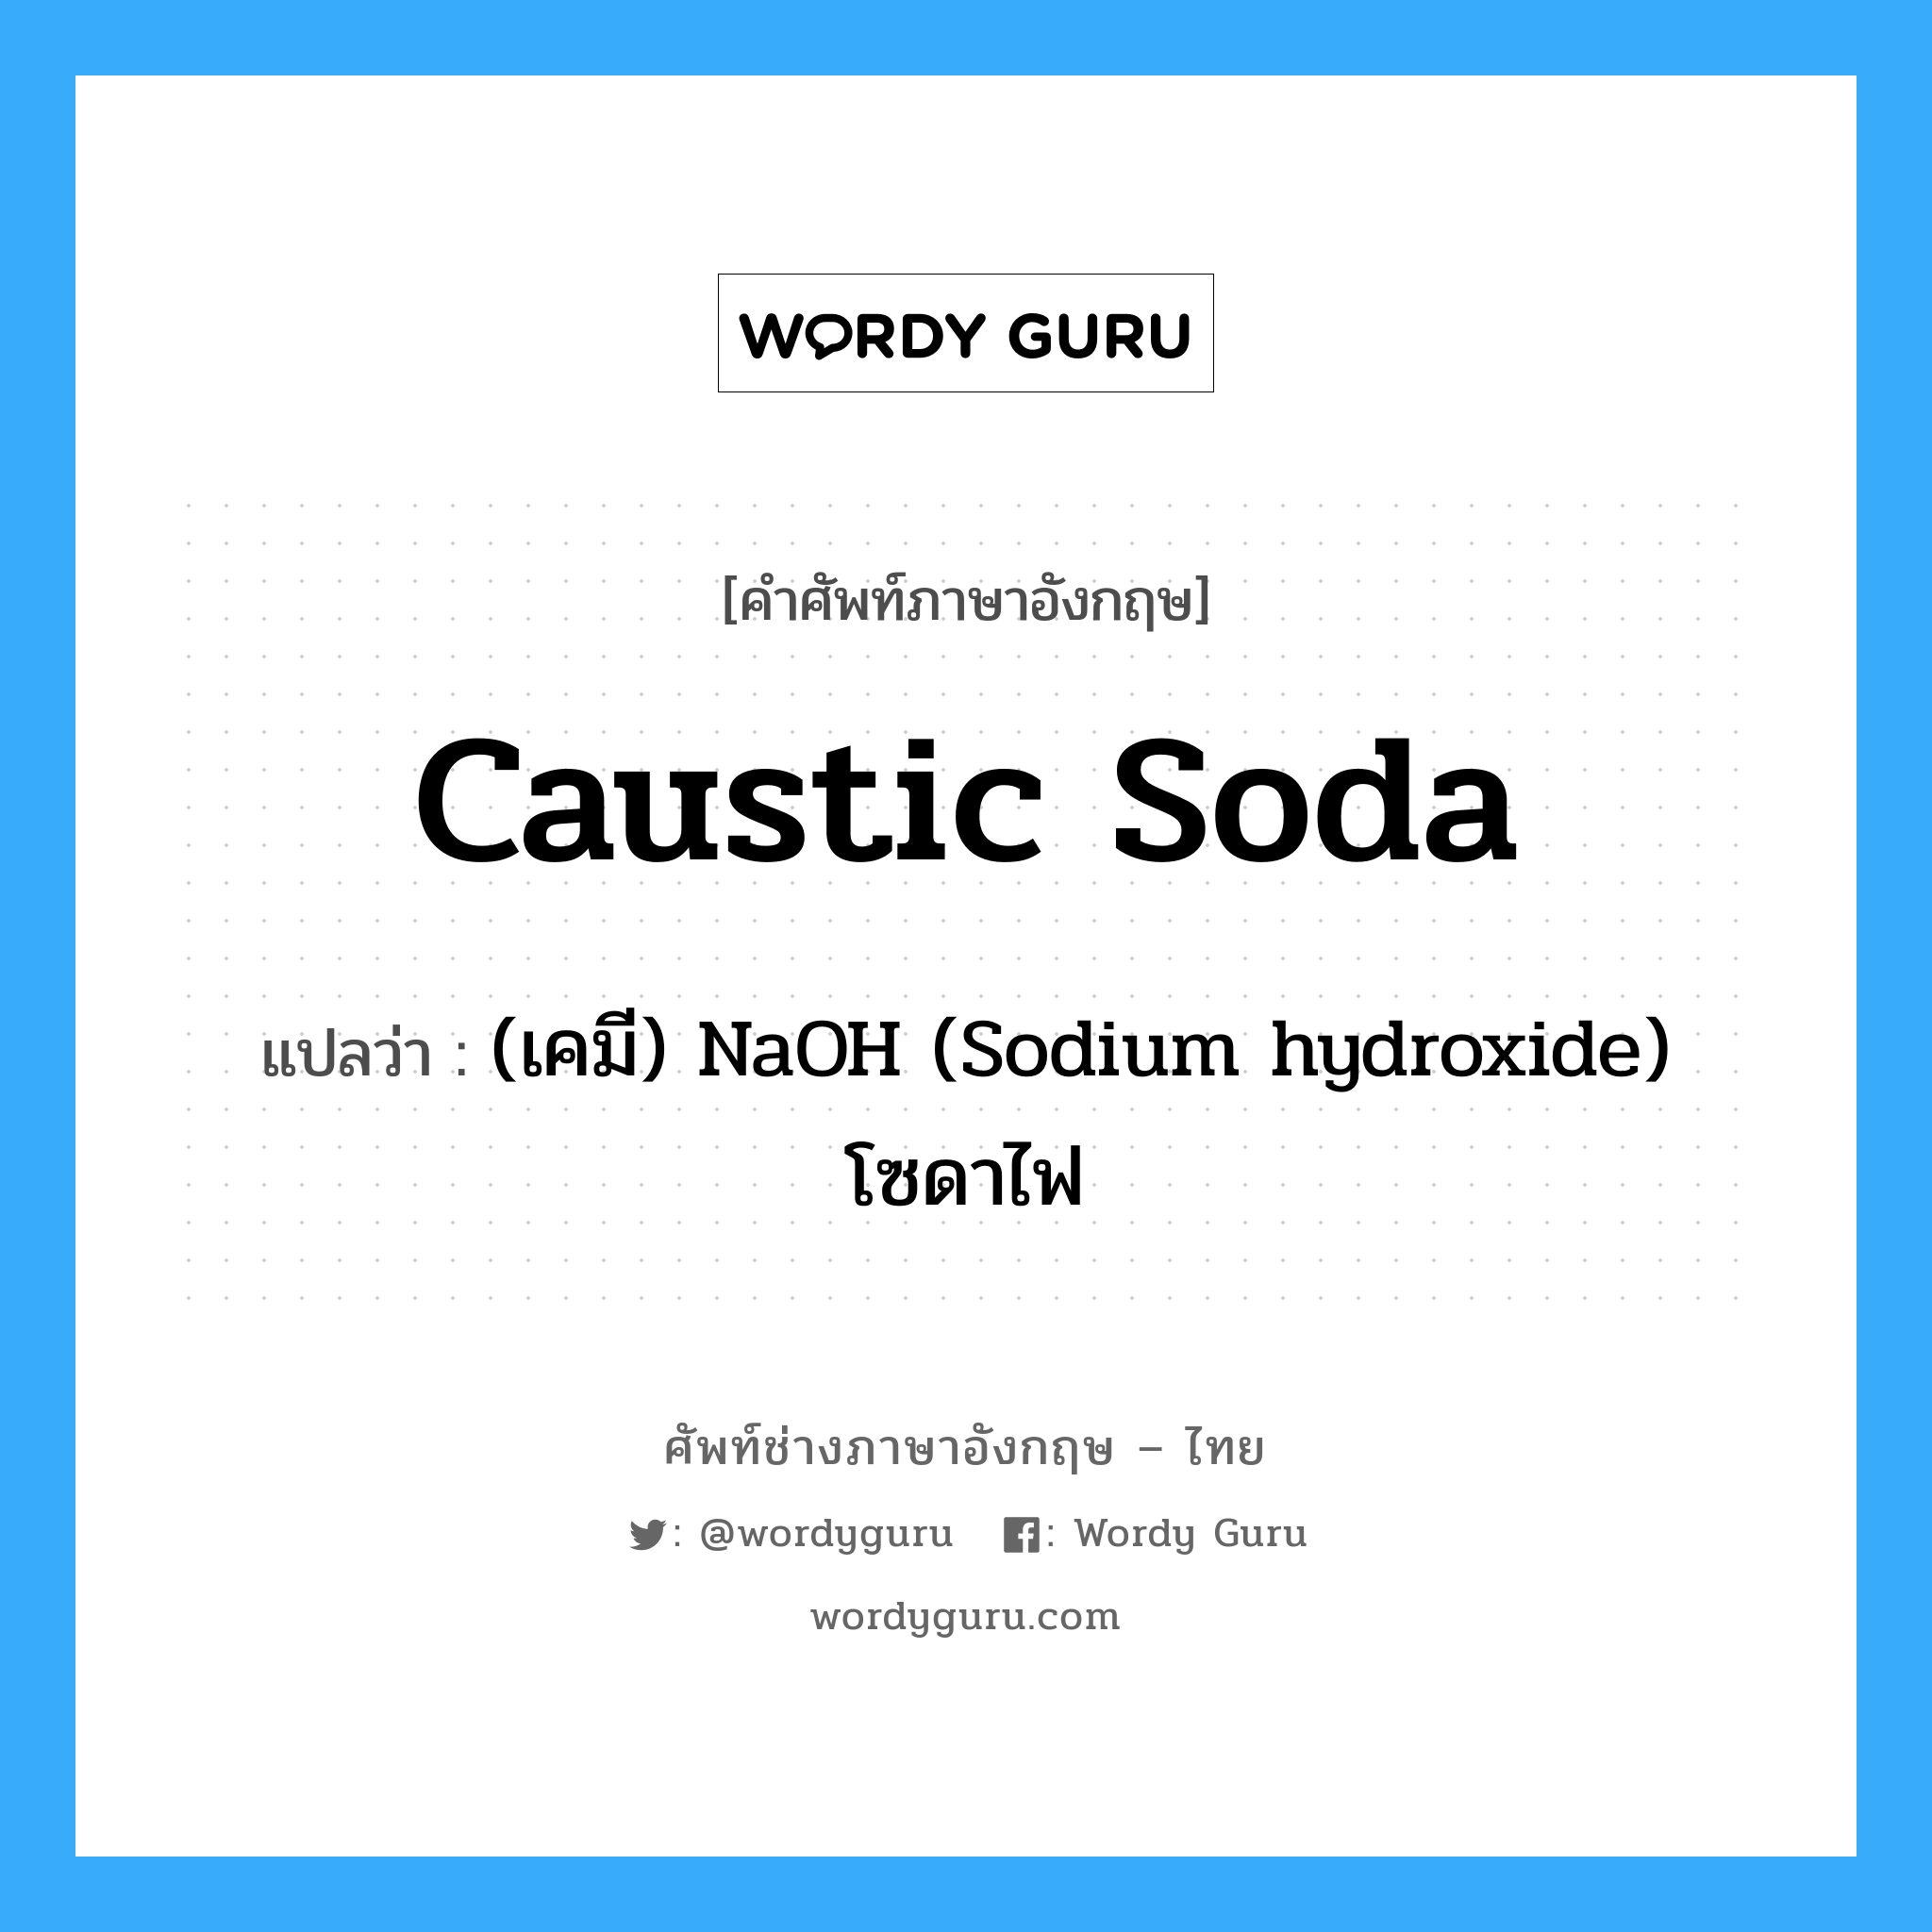 (เคมี) NaOH (Sodium hydroxide) โซดาไฟ ภาษาอังกฤษ?, คำศัพท์ช่างภาษาอังกฤษ - ไทย (เคมี) NaOH (Sodium hydroxide) โซดาไฟ คำศัพท์ภาษาอังกฤษ (เคมี) NaOH (Sodium hydroxide) โซดาไฟ แปลว่า caustic soda